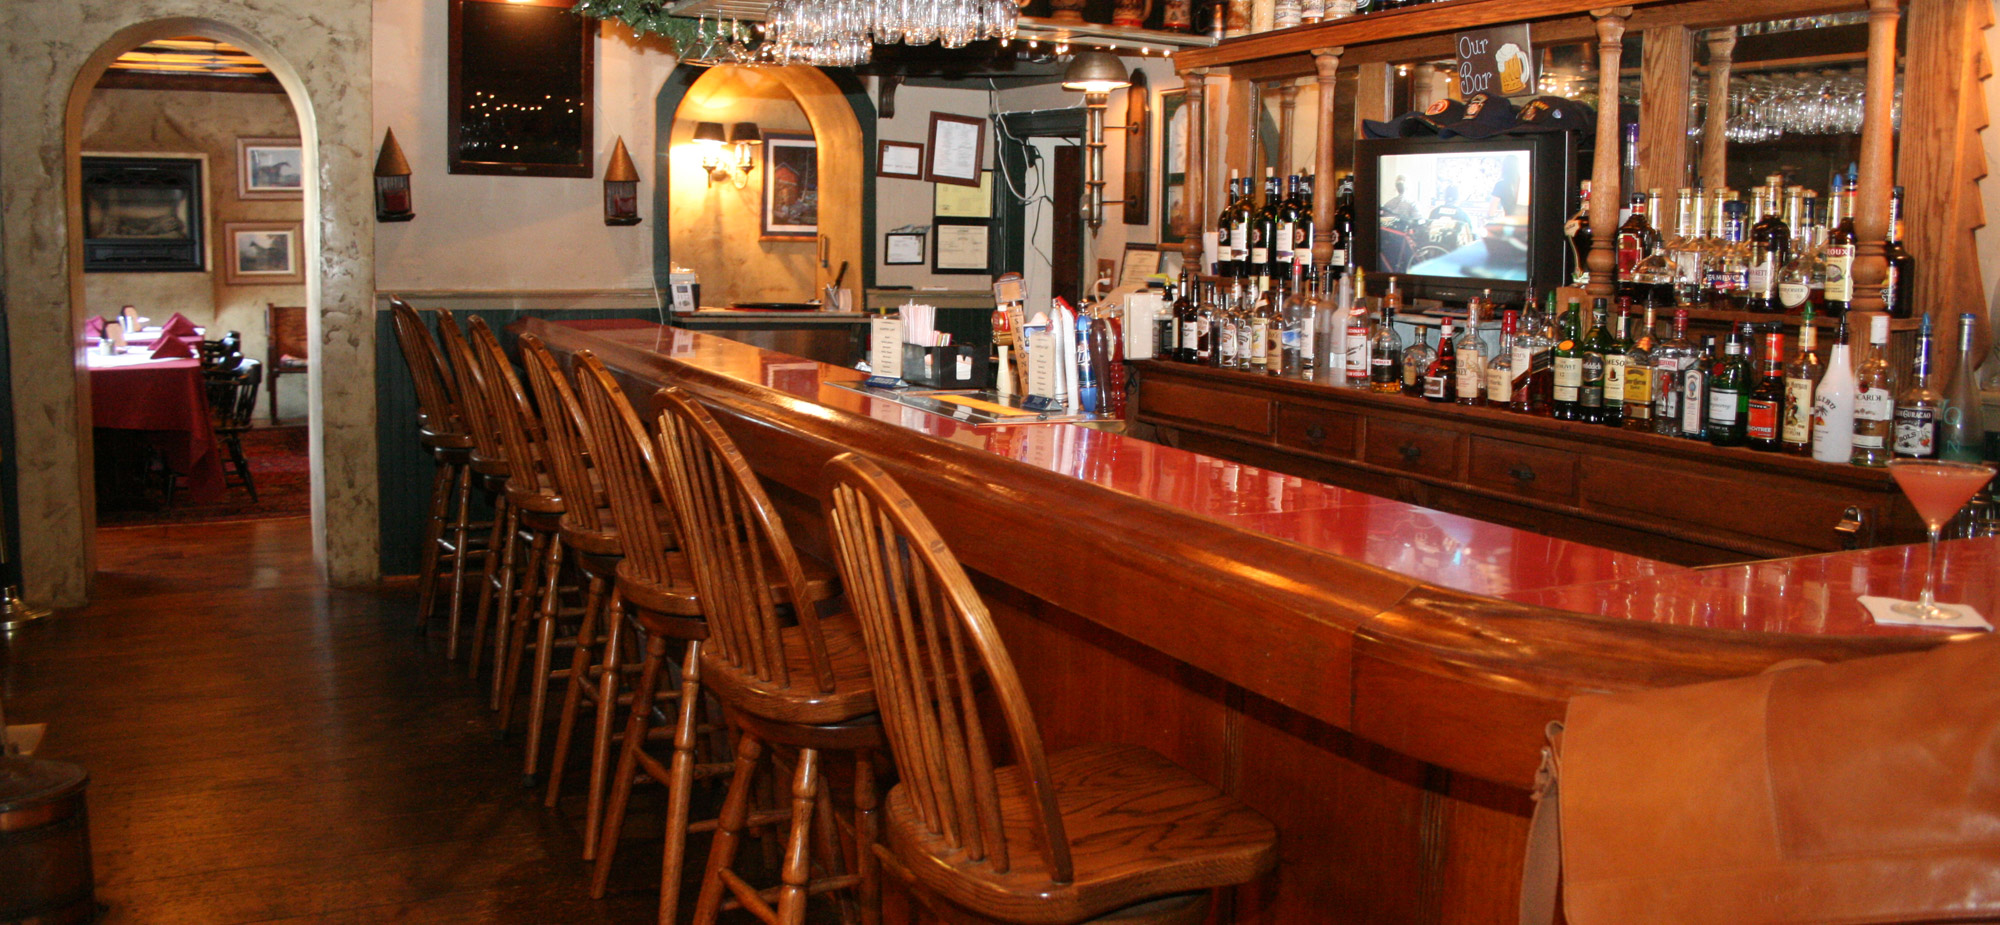 The bar at the Springtown Inn